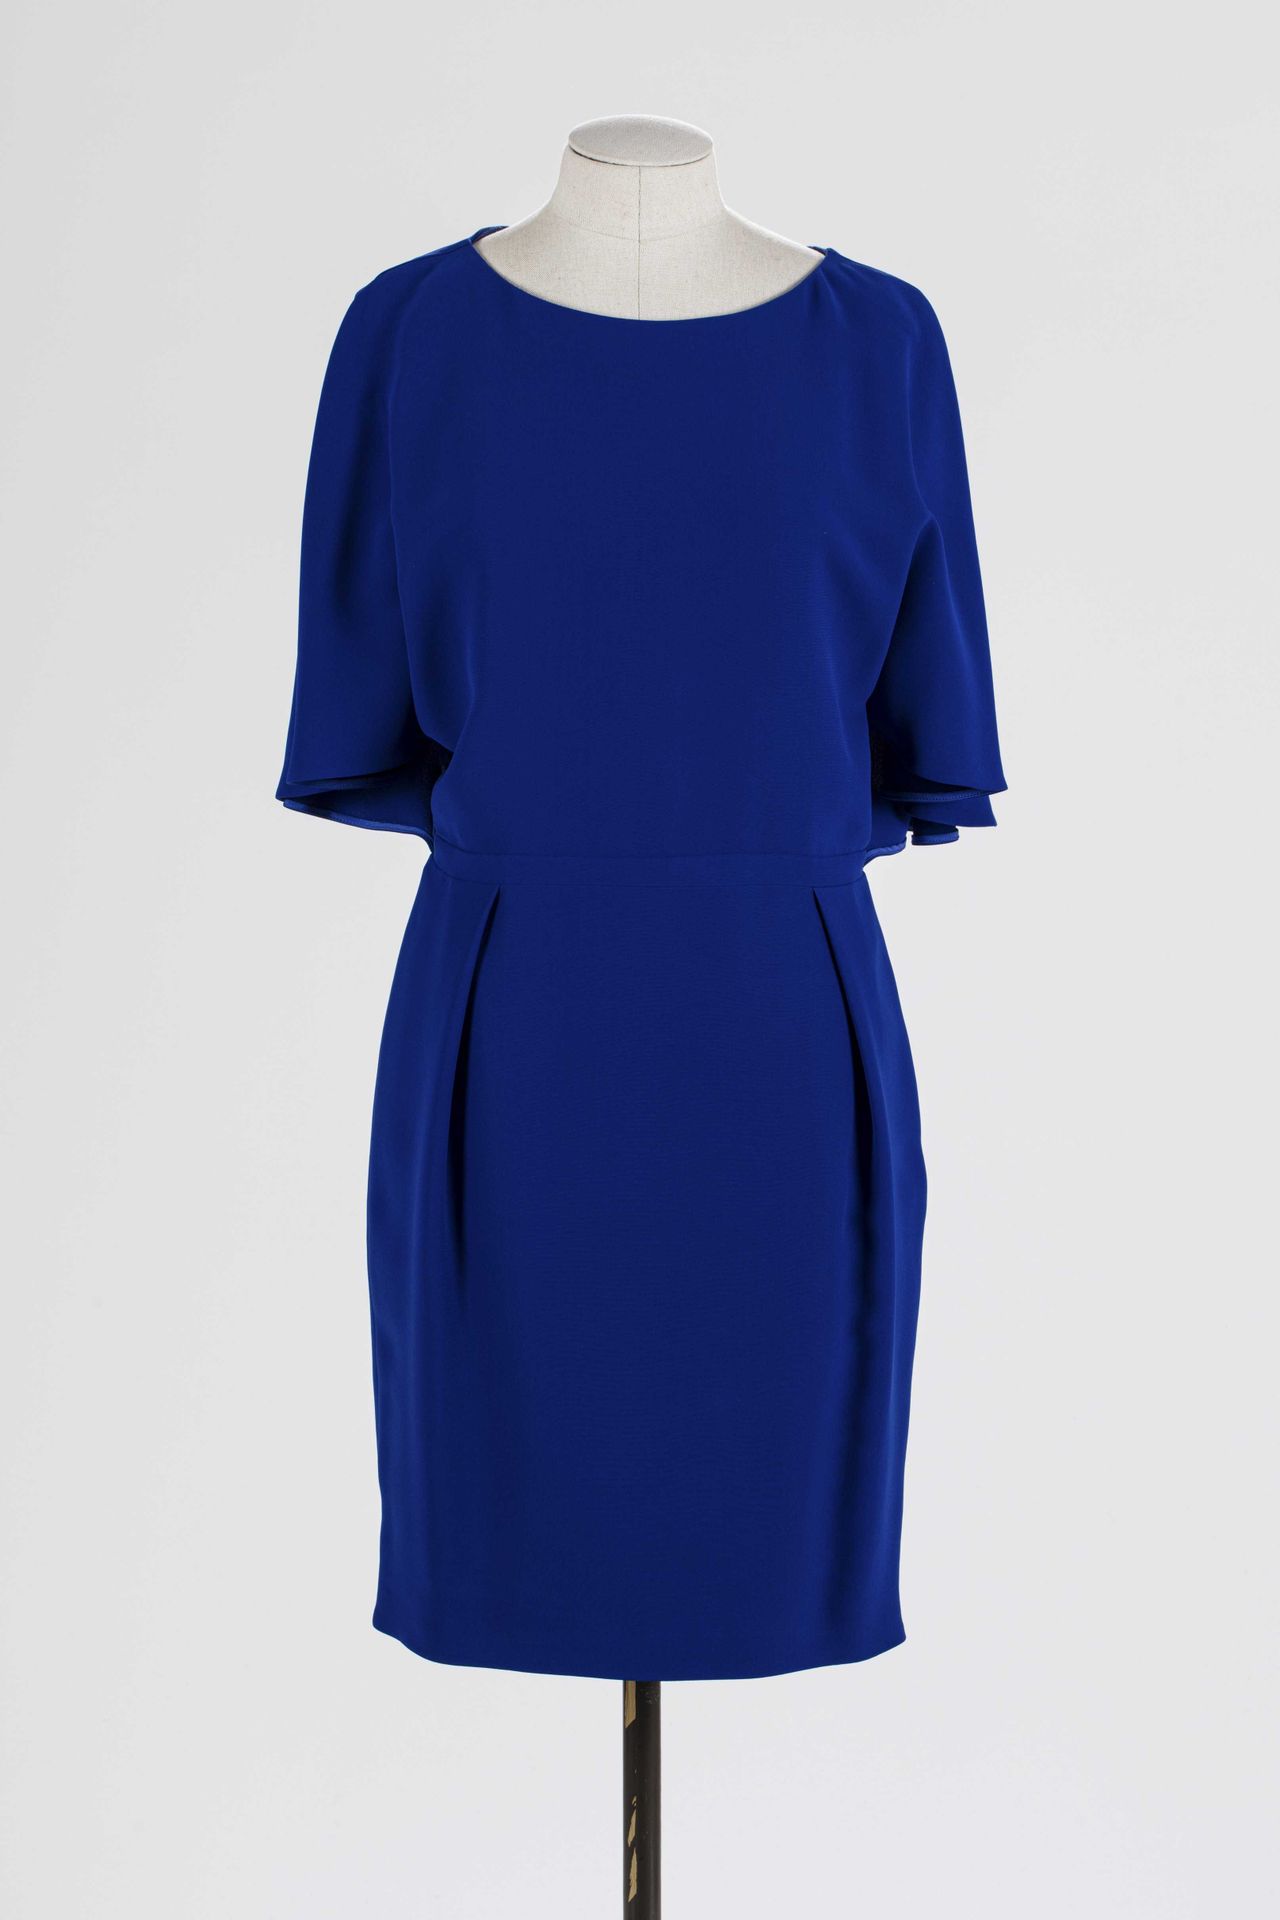 Null GUCCI：蓝色丝绸连衣裙，喇叭袖，背后有纽扣封口。

T.36